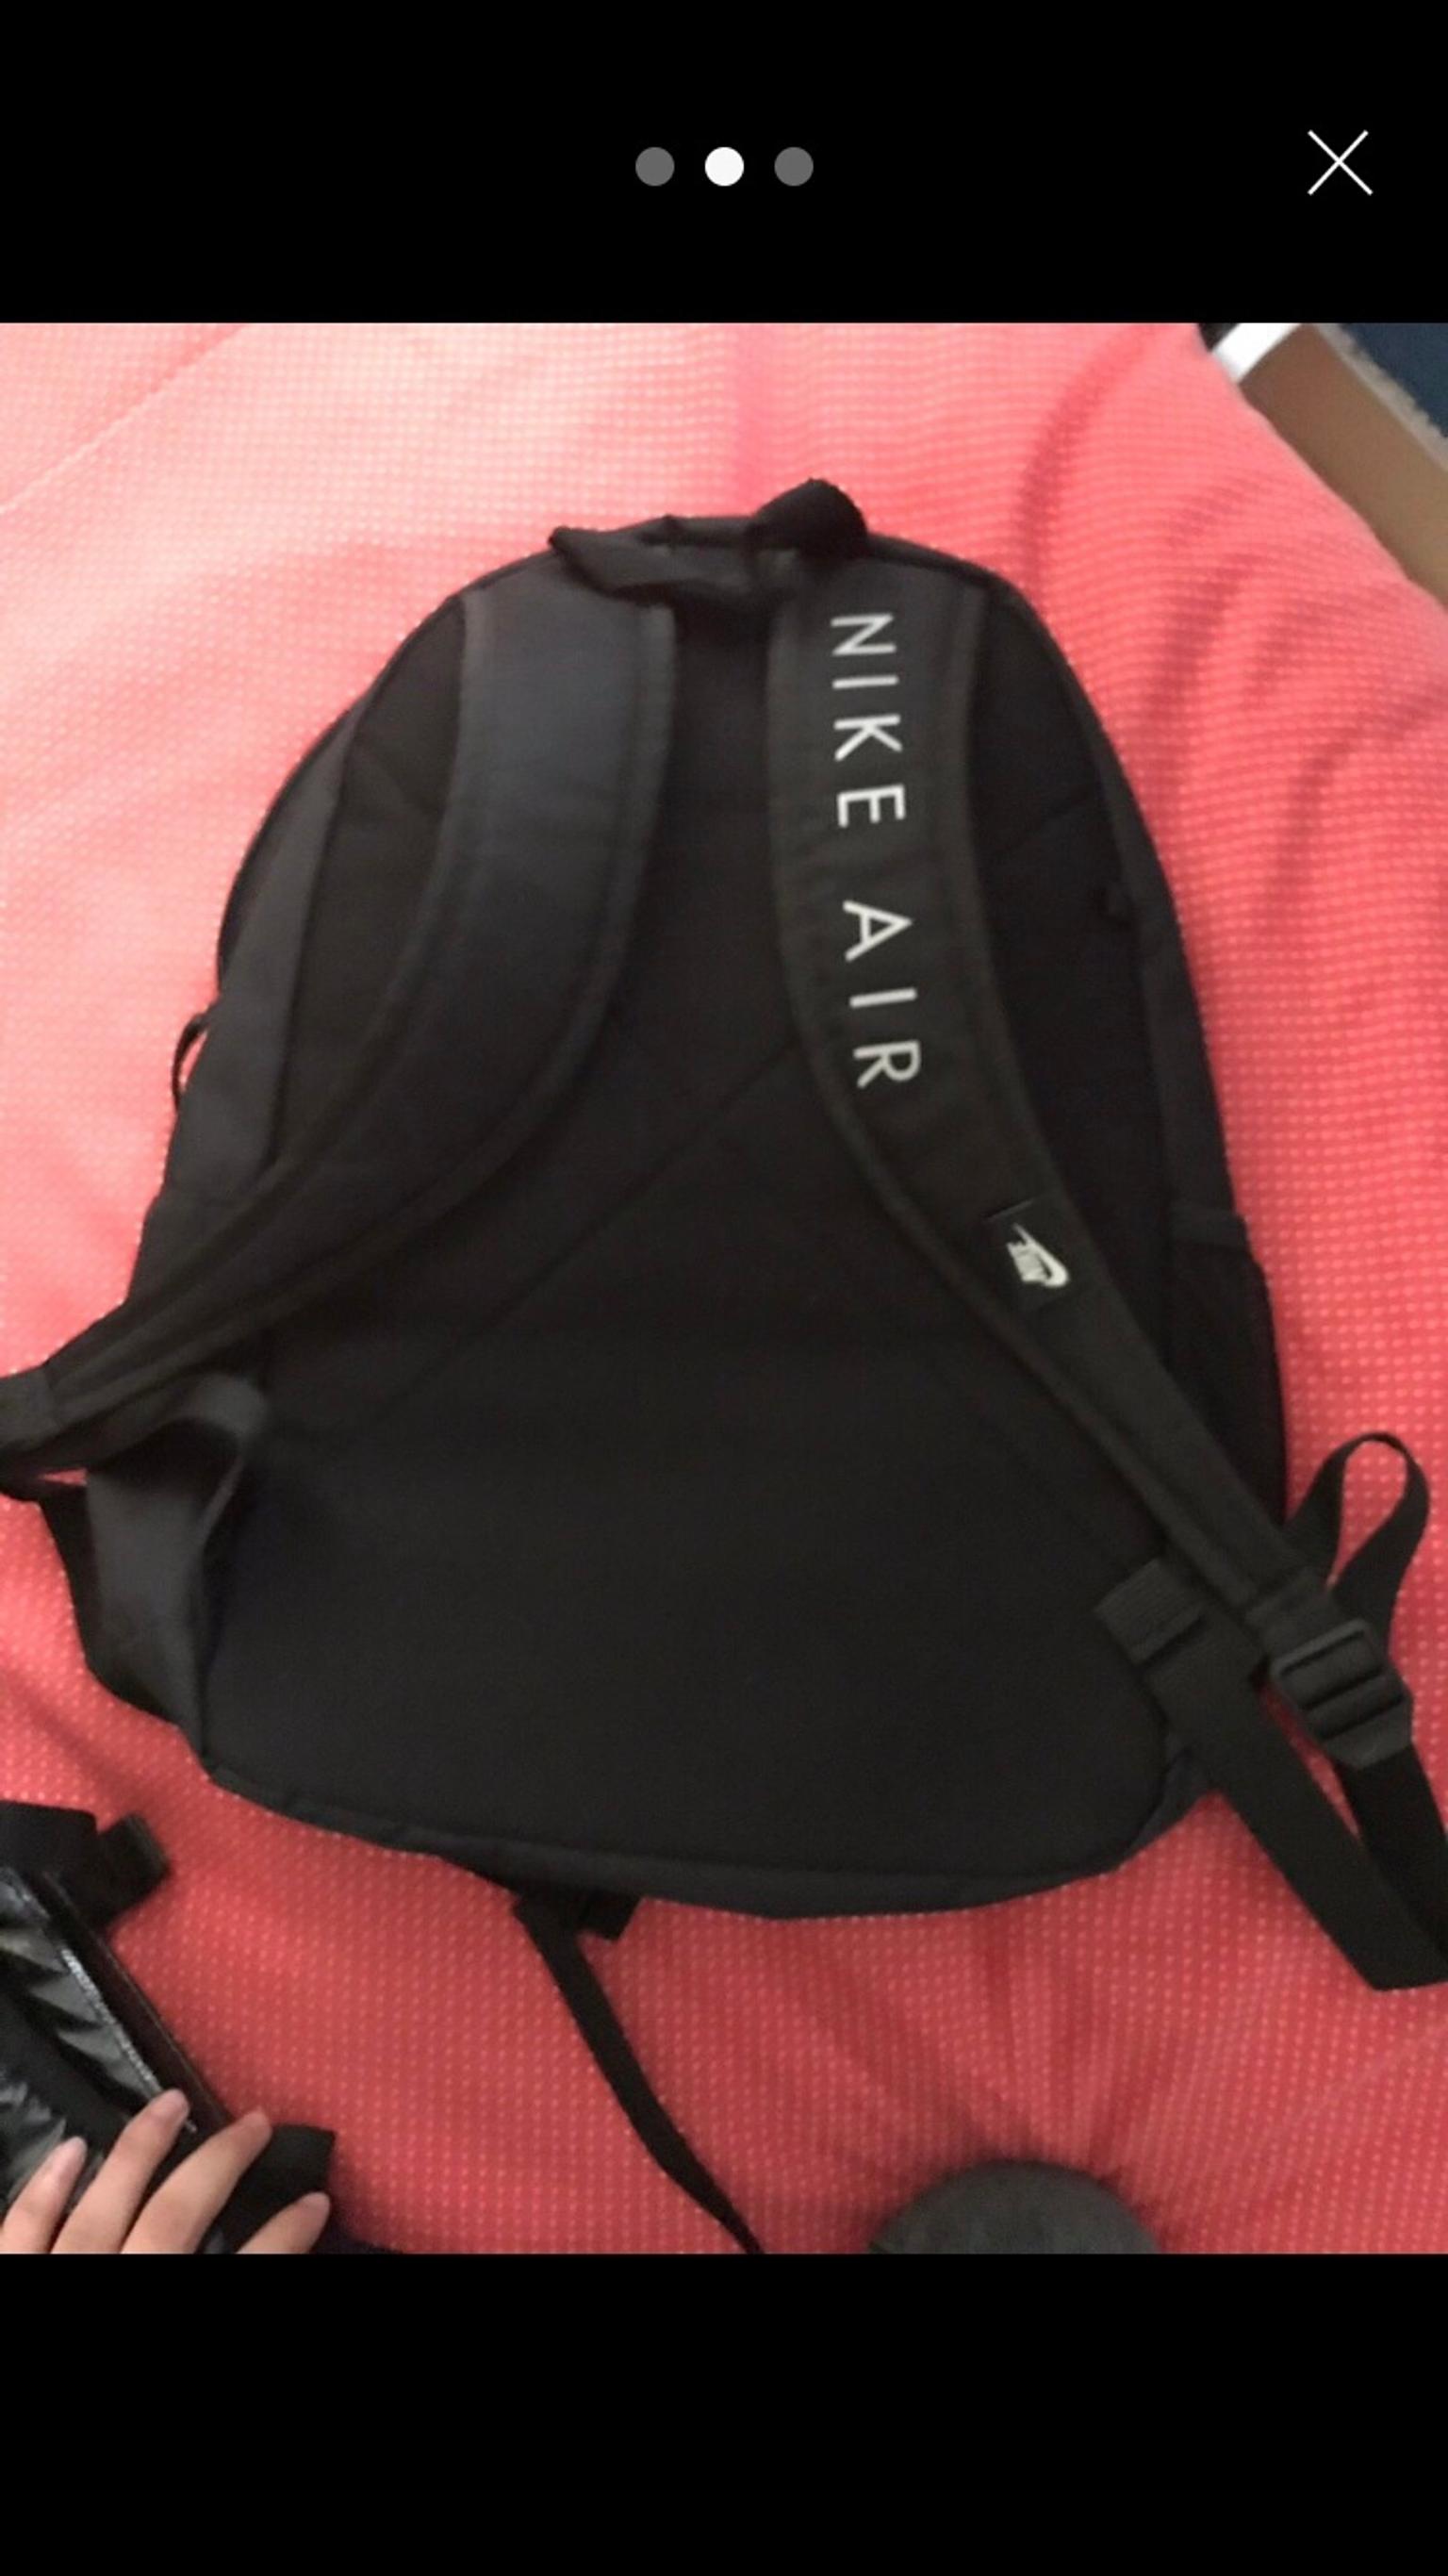 nike elemental air backpack